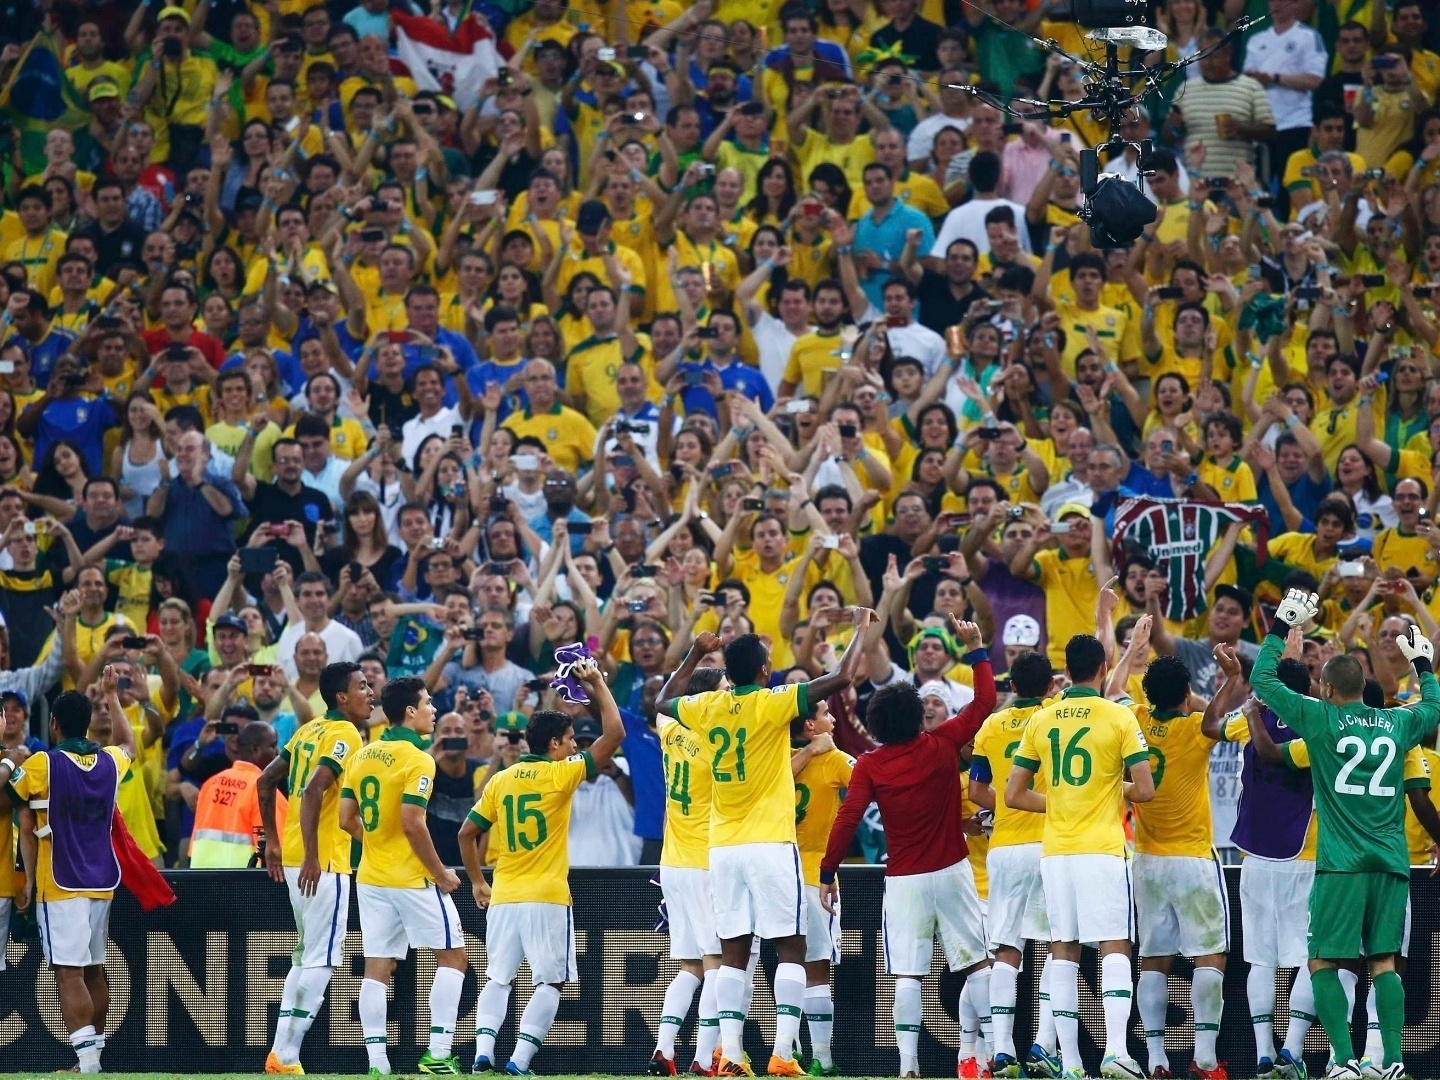 Na seleção brasileira, estrela importa mais do que treino